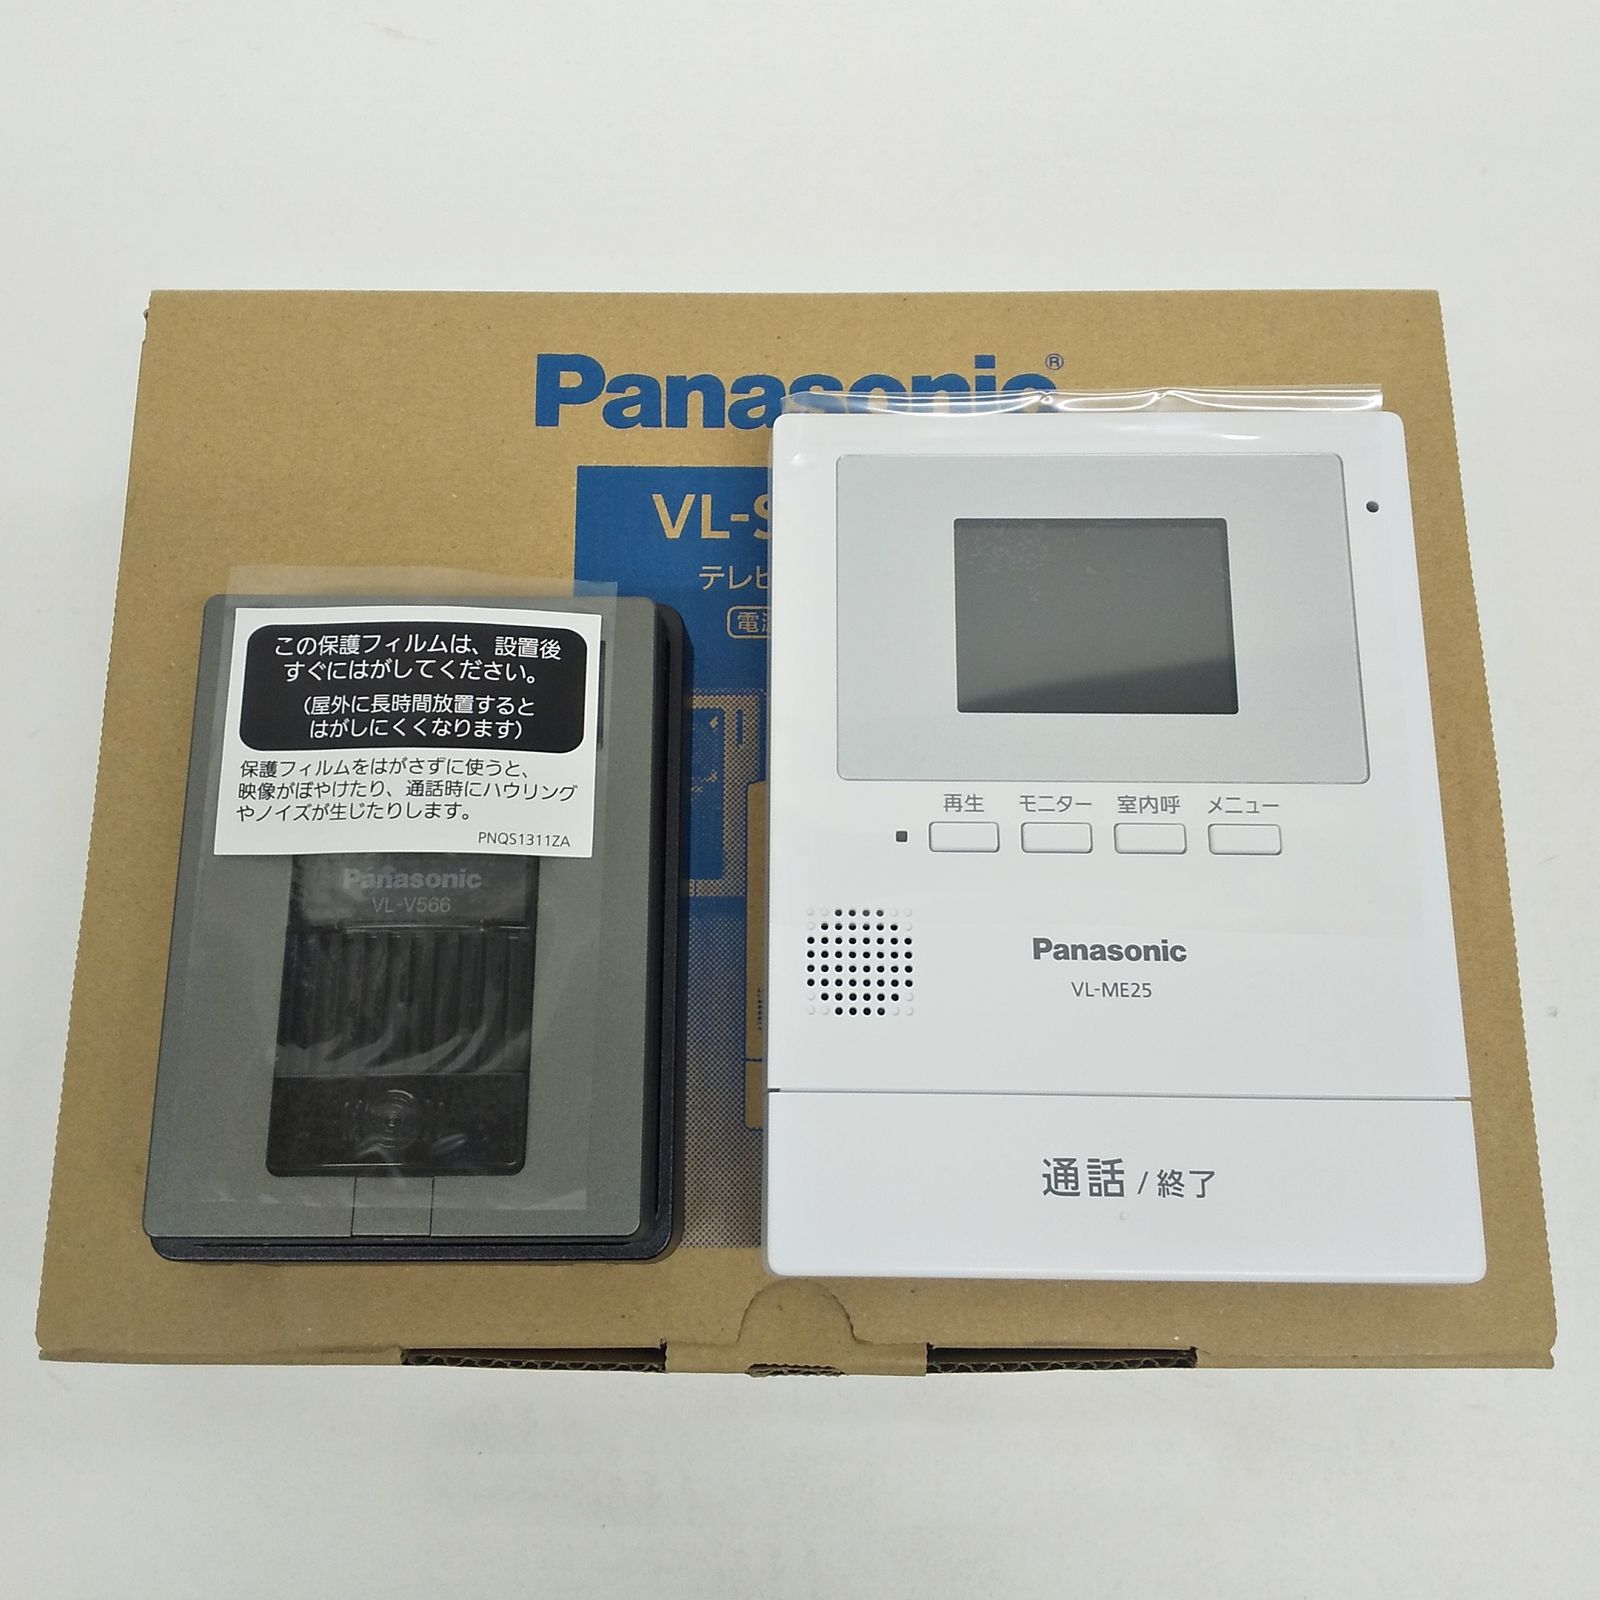 Panasonic テレビドアホン VL-SE25X 電源直結式 モニター親機 VL-ME25 カメラ玄関子機 VL-V566 2.7型カラー液晶  パナソニック R2308-150 カシコシュアウトレット店 メルカリ